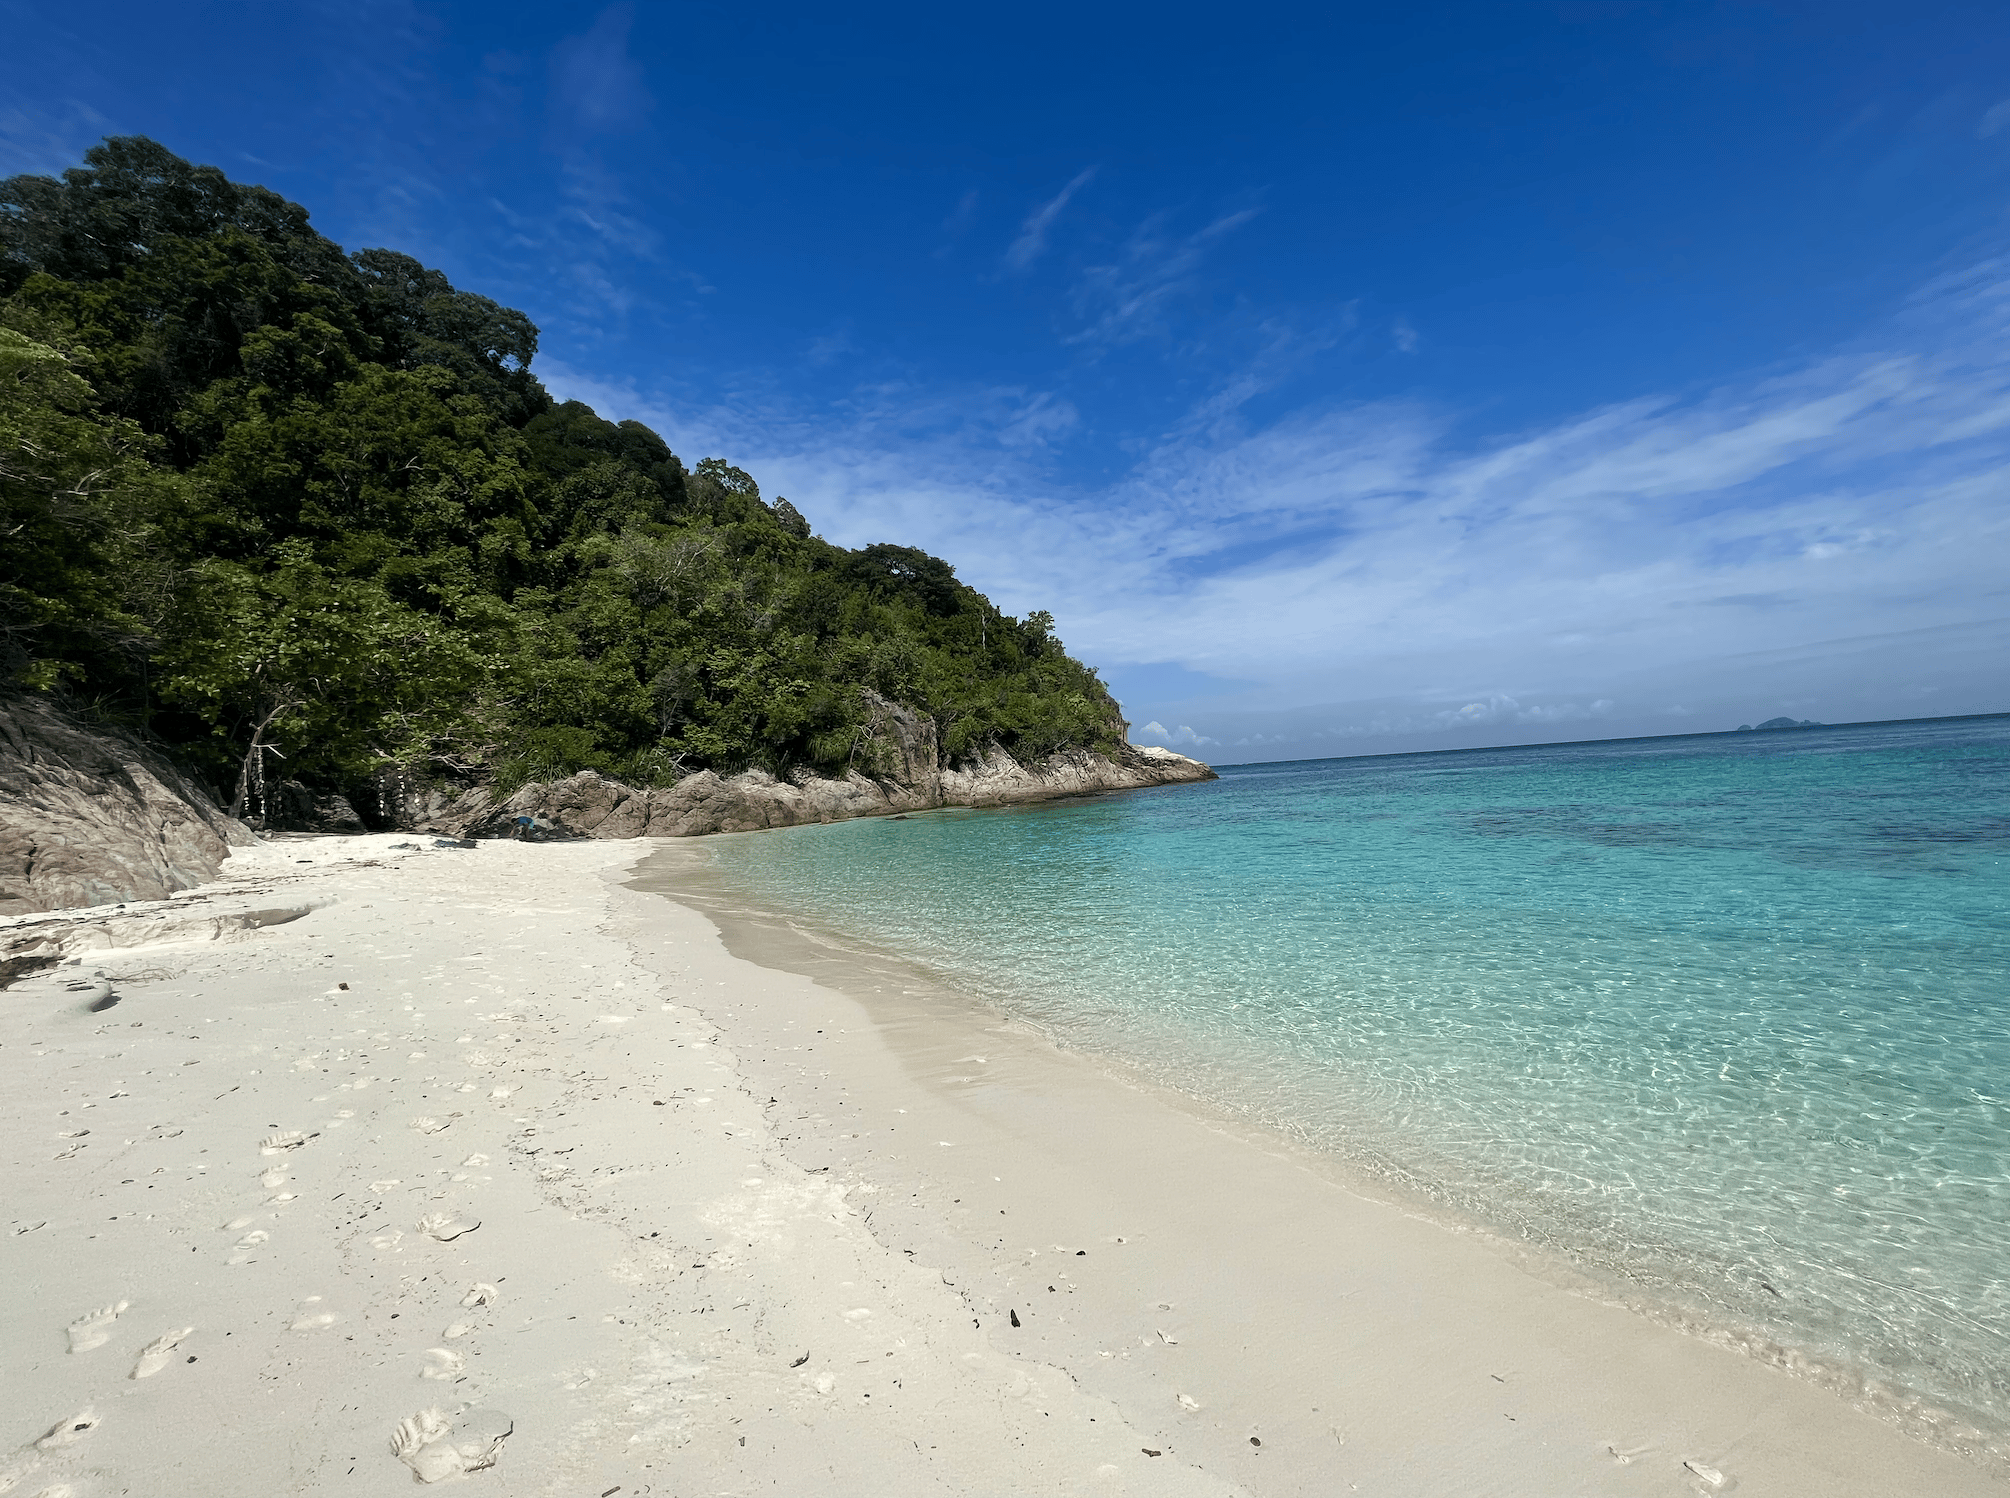 plus beaux paysages de malaisie : romantic beach aux iles perhentian